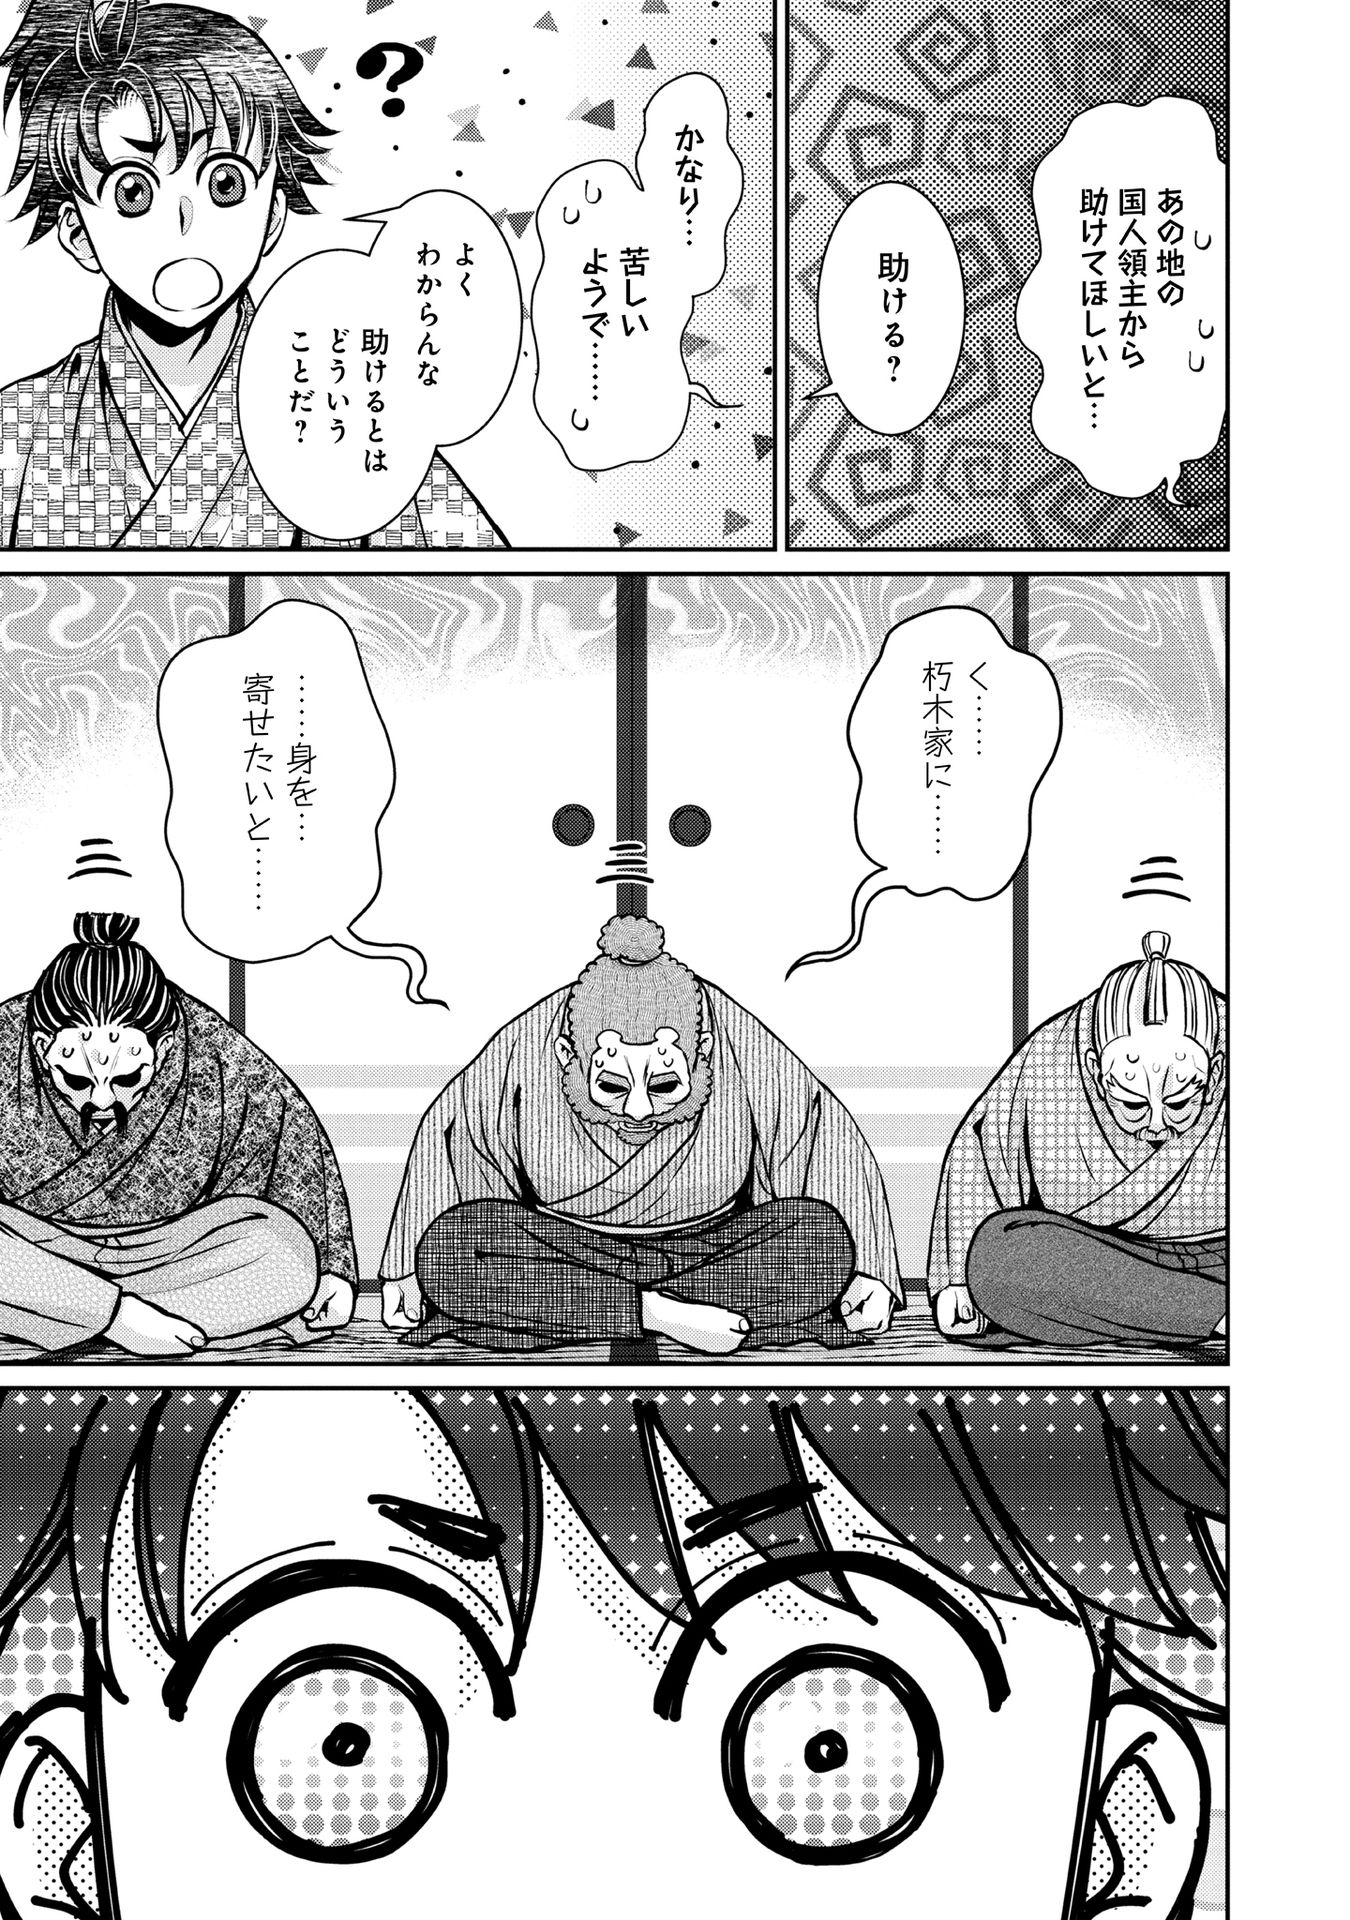 Afumi no Umi – Minamo ga Yureru Toki - Chapter 15 - Page 13